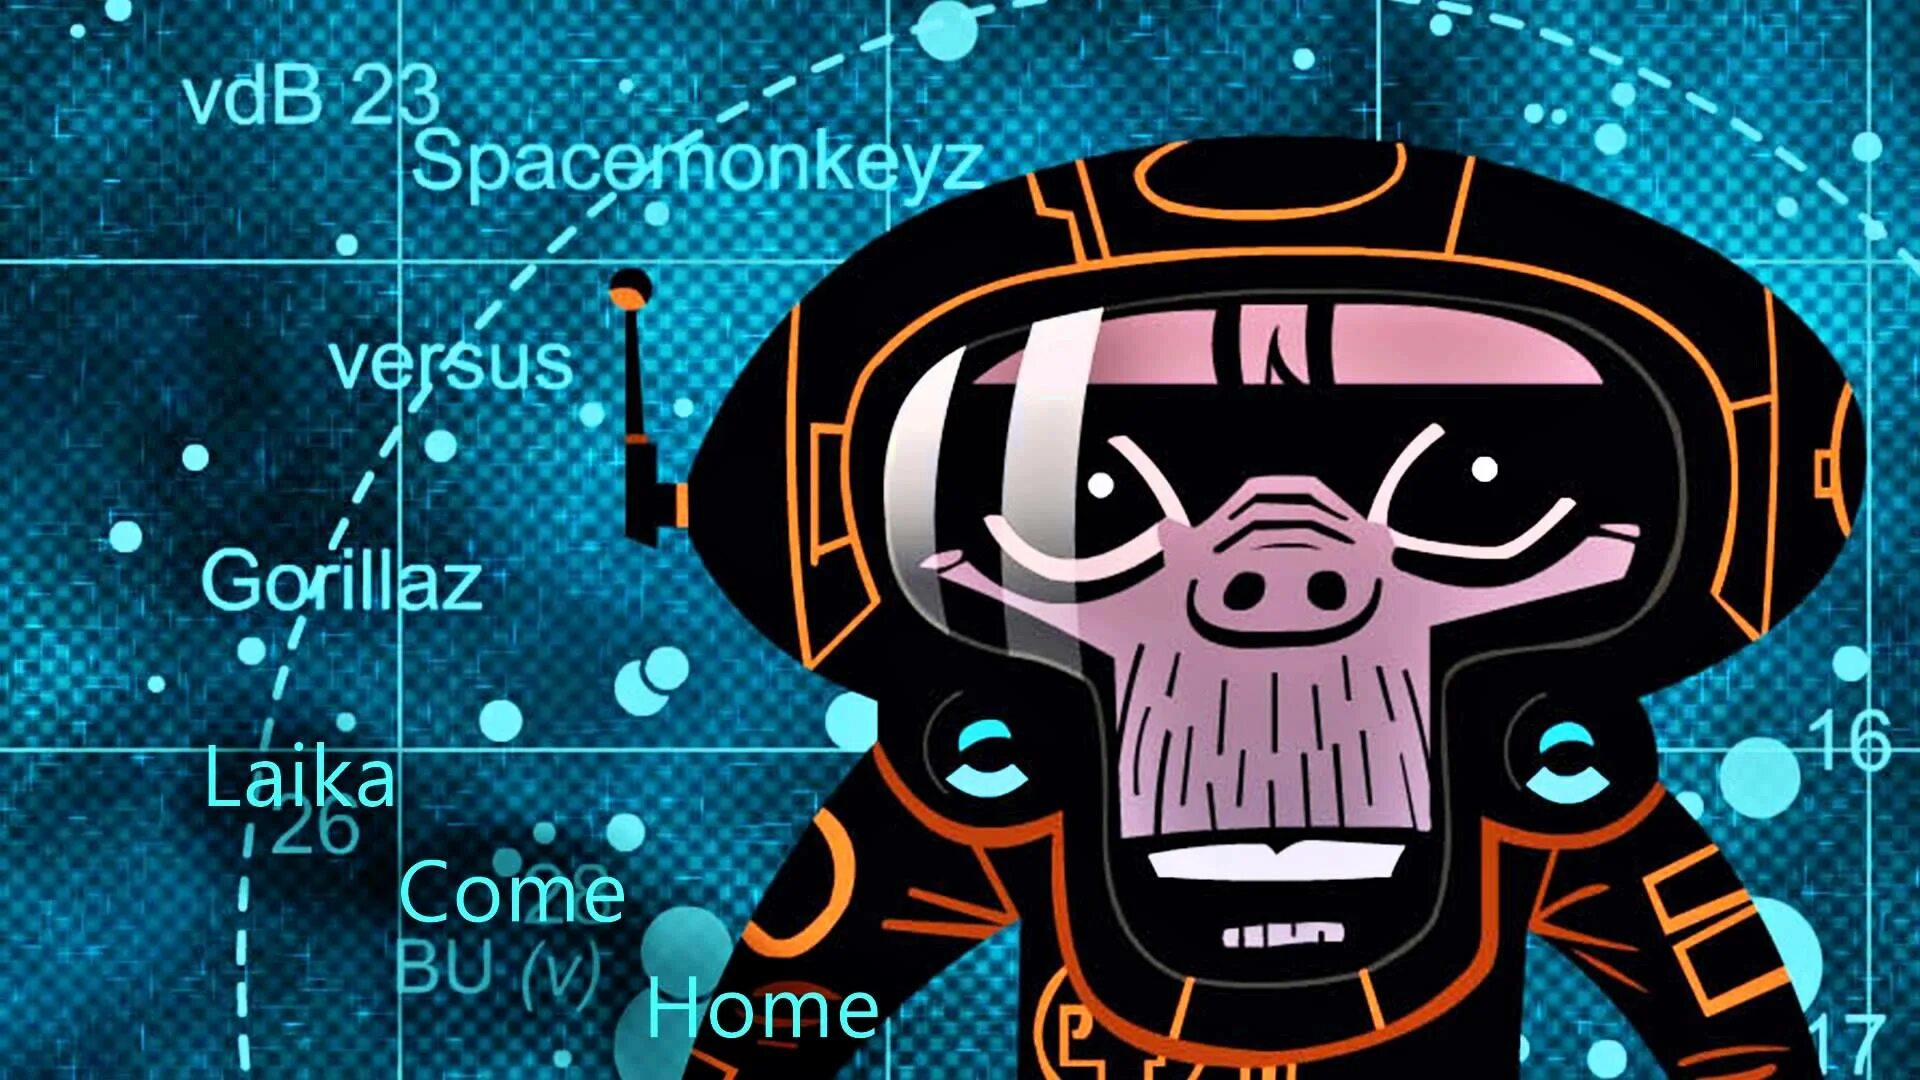 We coming home now. Gorillaz laika come Home. Spacemonkeyz. Spacemonkeyz versus Gorillaz laika come Home. M1a1 Gorillaz.